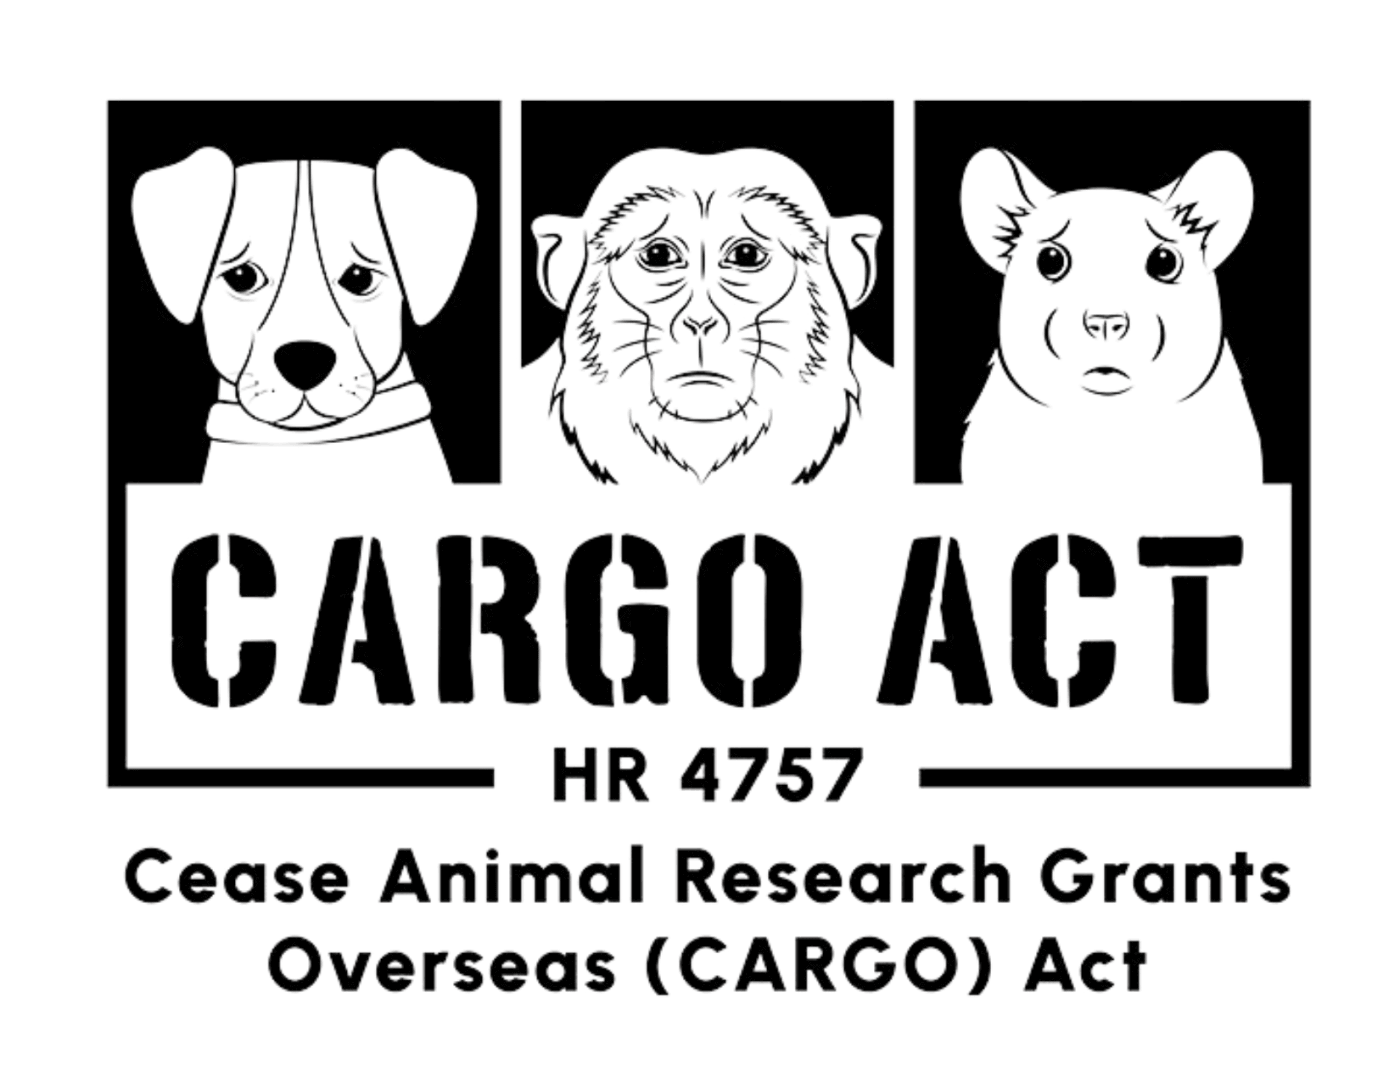 CARGO act logo